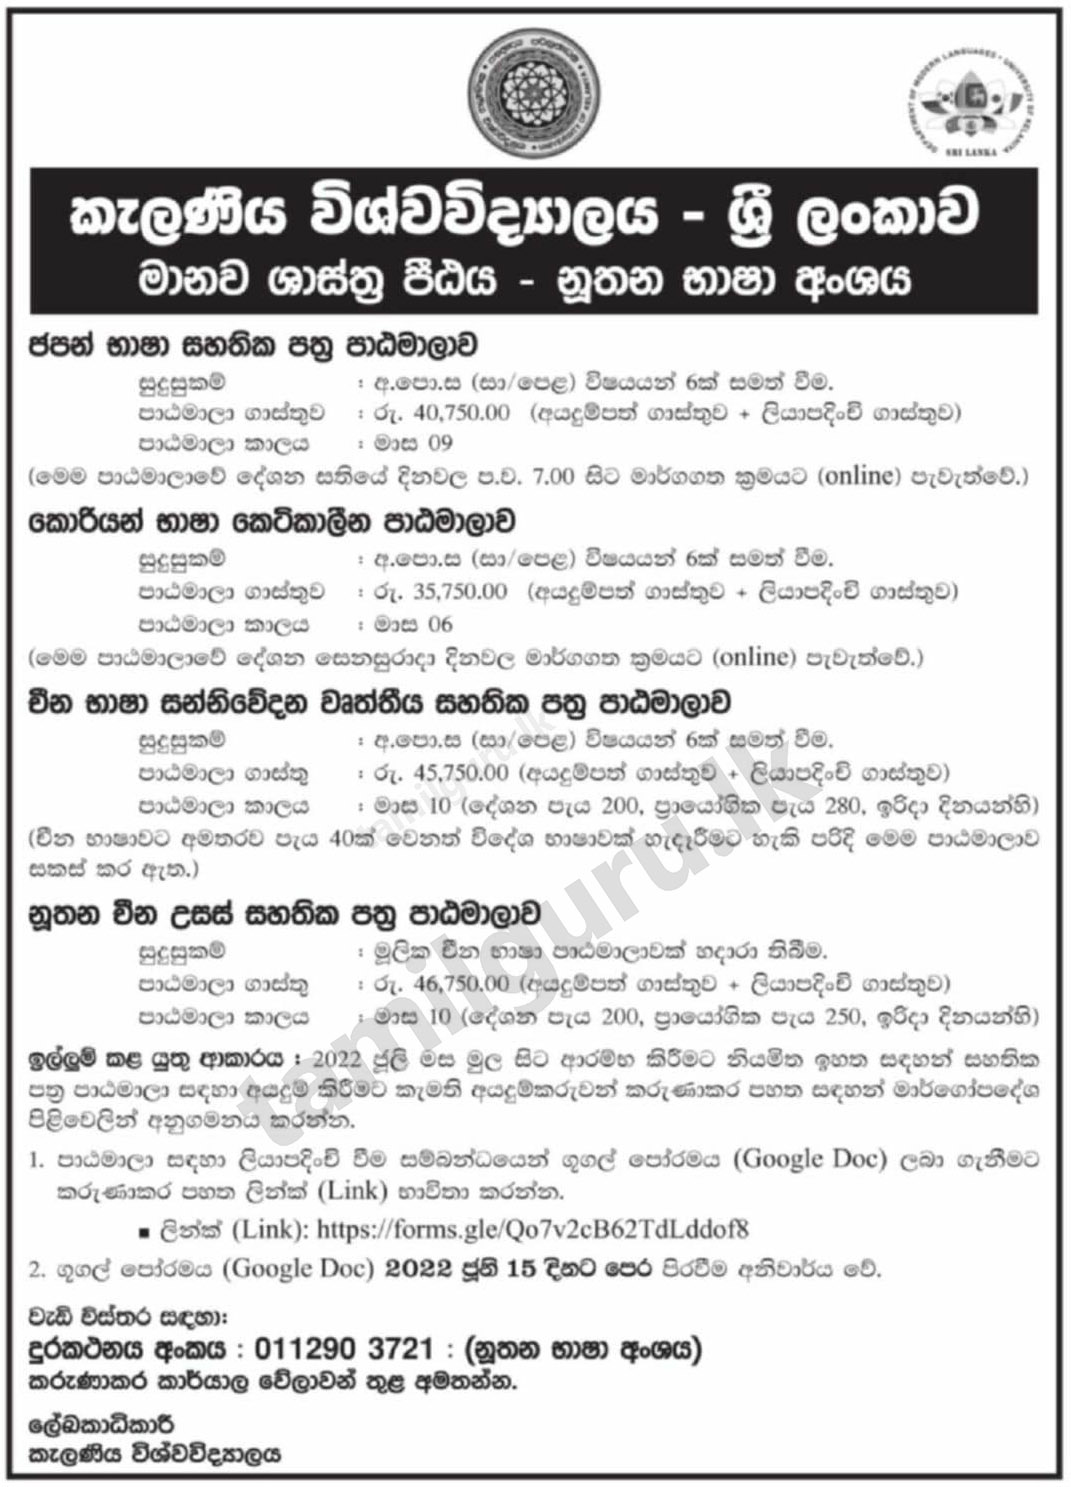 Modern Language Courses (Japanese, Chinese, Korean) 2022 - University of Kelaniya, Department of Modern Languages (Details in Sinhala)